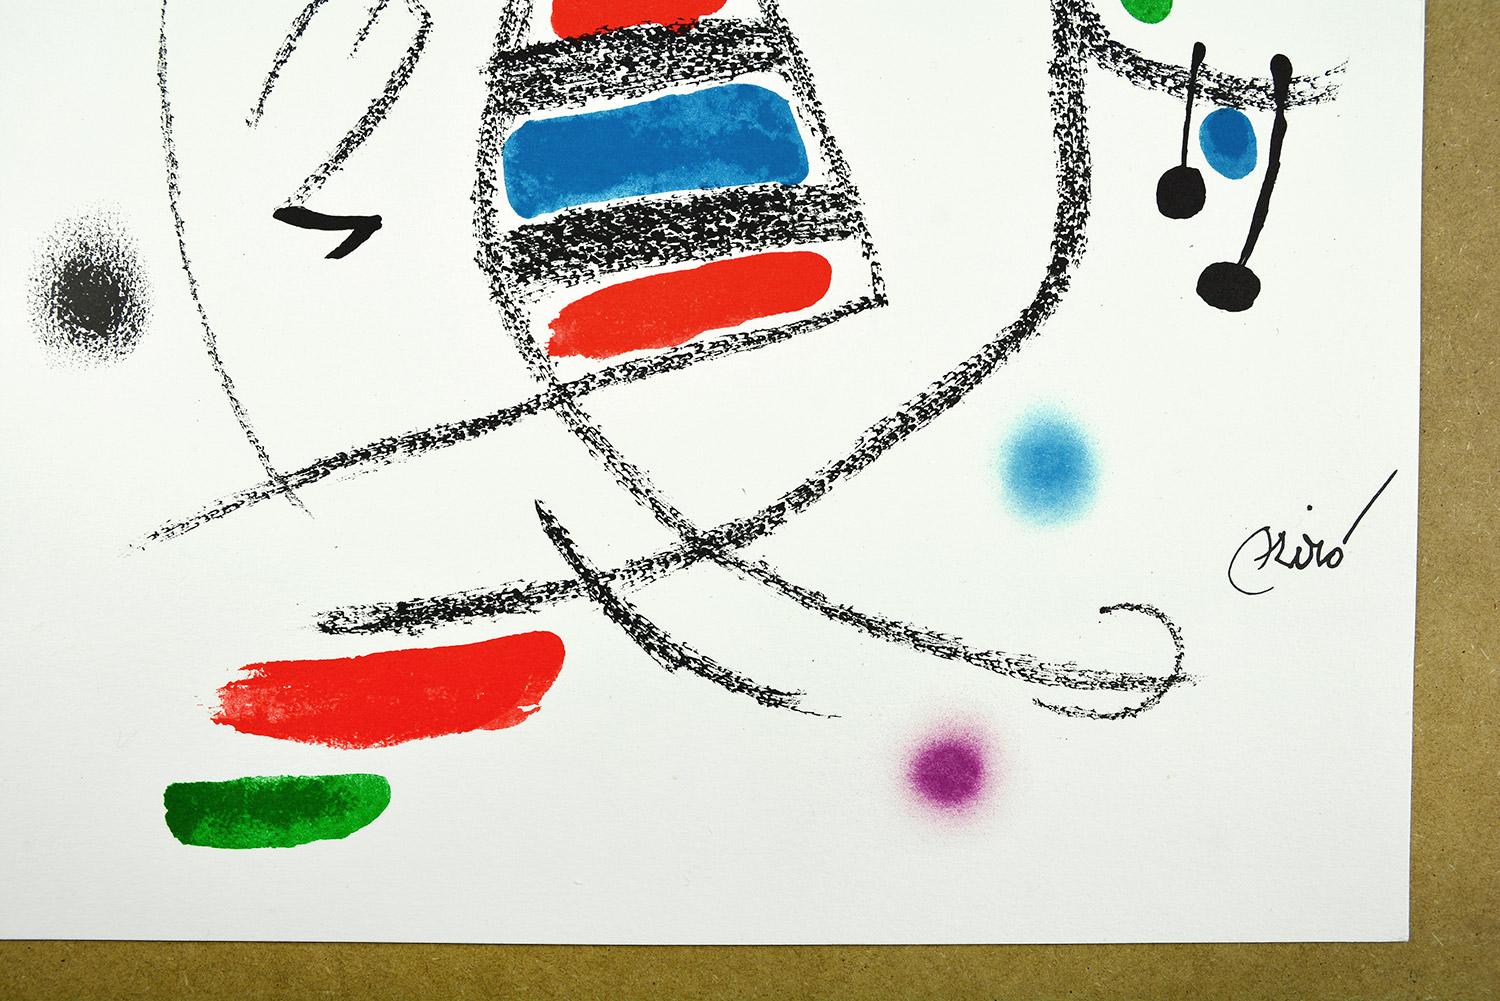 Maravillas con variaciones acrósticas en el jardín de Miró VIII
Date of creation: 1975
Medium: Lithograph
Media: Gvarro paper
Edition: 1500
Size: 49,5 x 35,5 cm
Observations: Lithograph on Gvarro paper plate signed. Edited by Polígrafa, Barcelona,